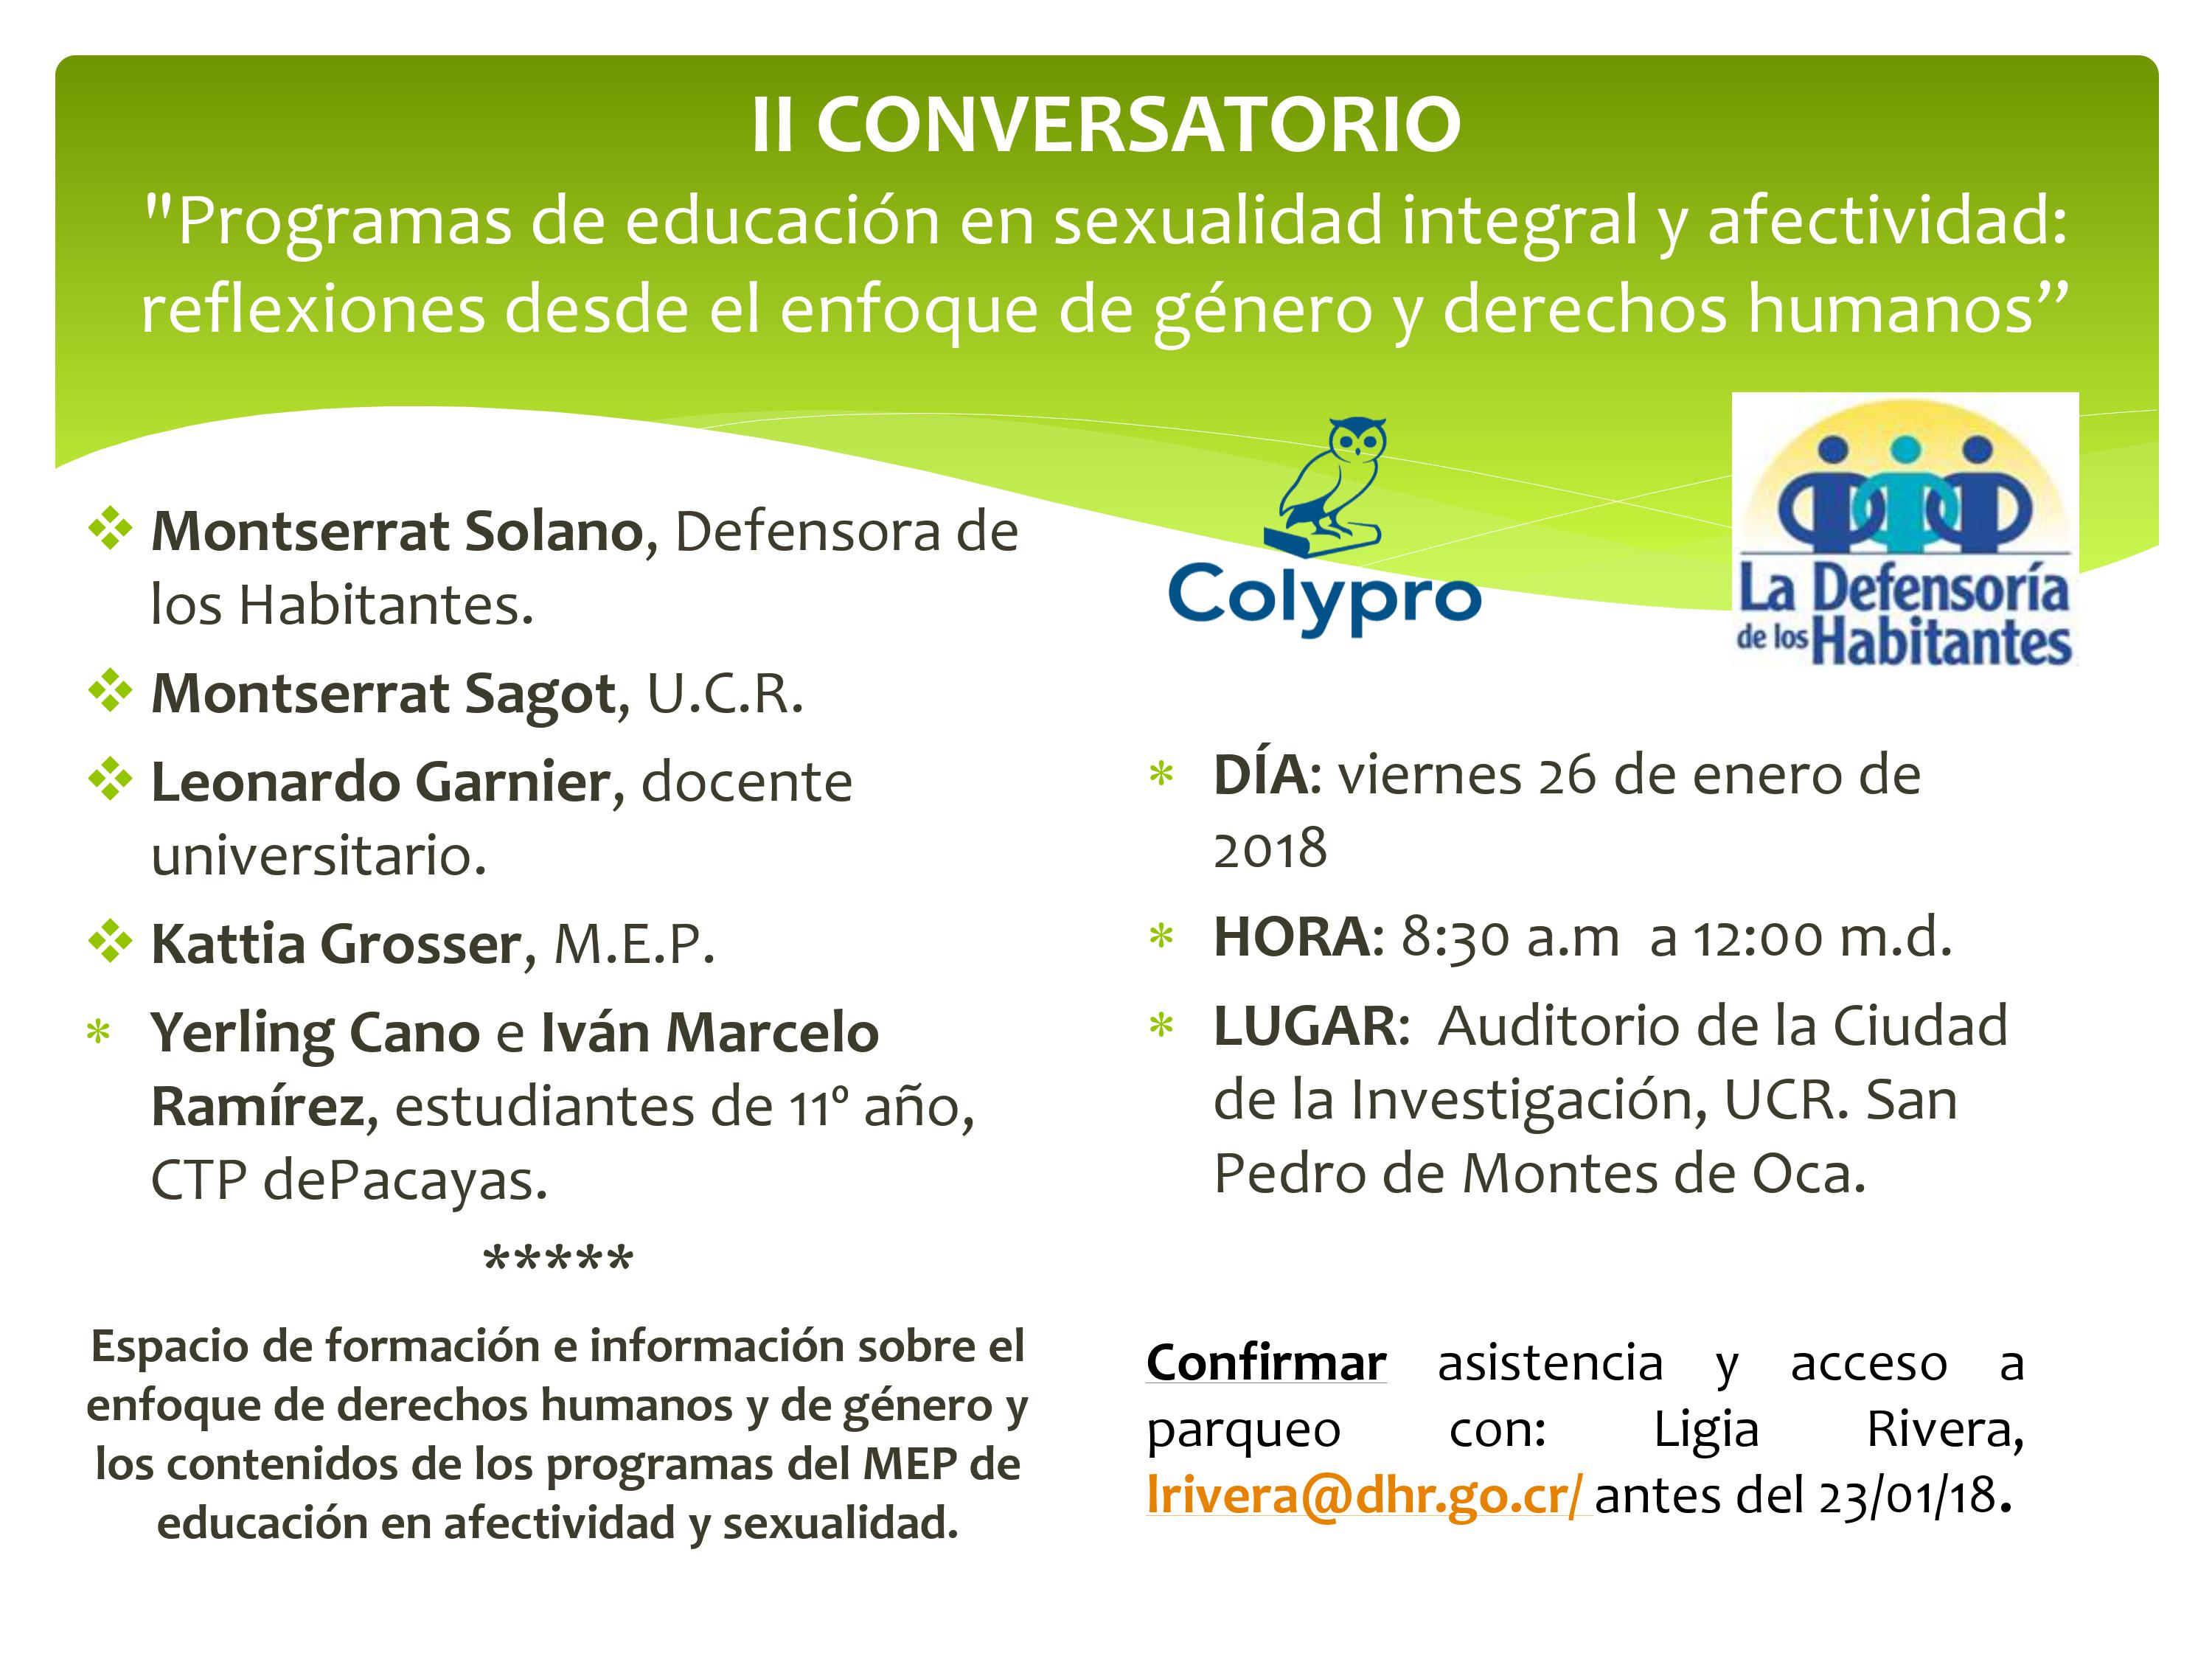 Colypro Organiza Conversatorio Sobre Programa De Educacion En